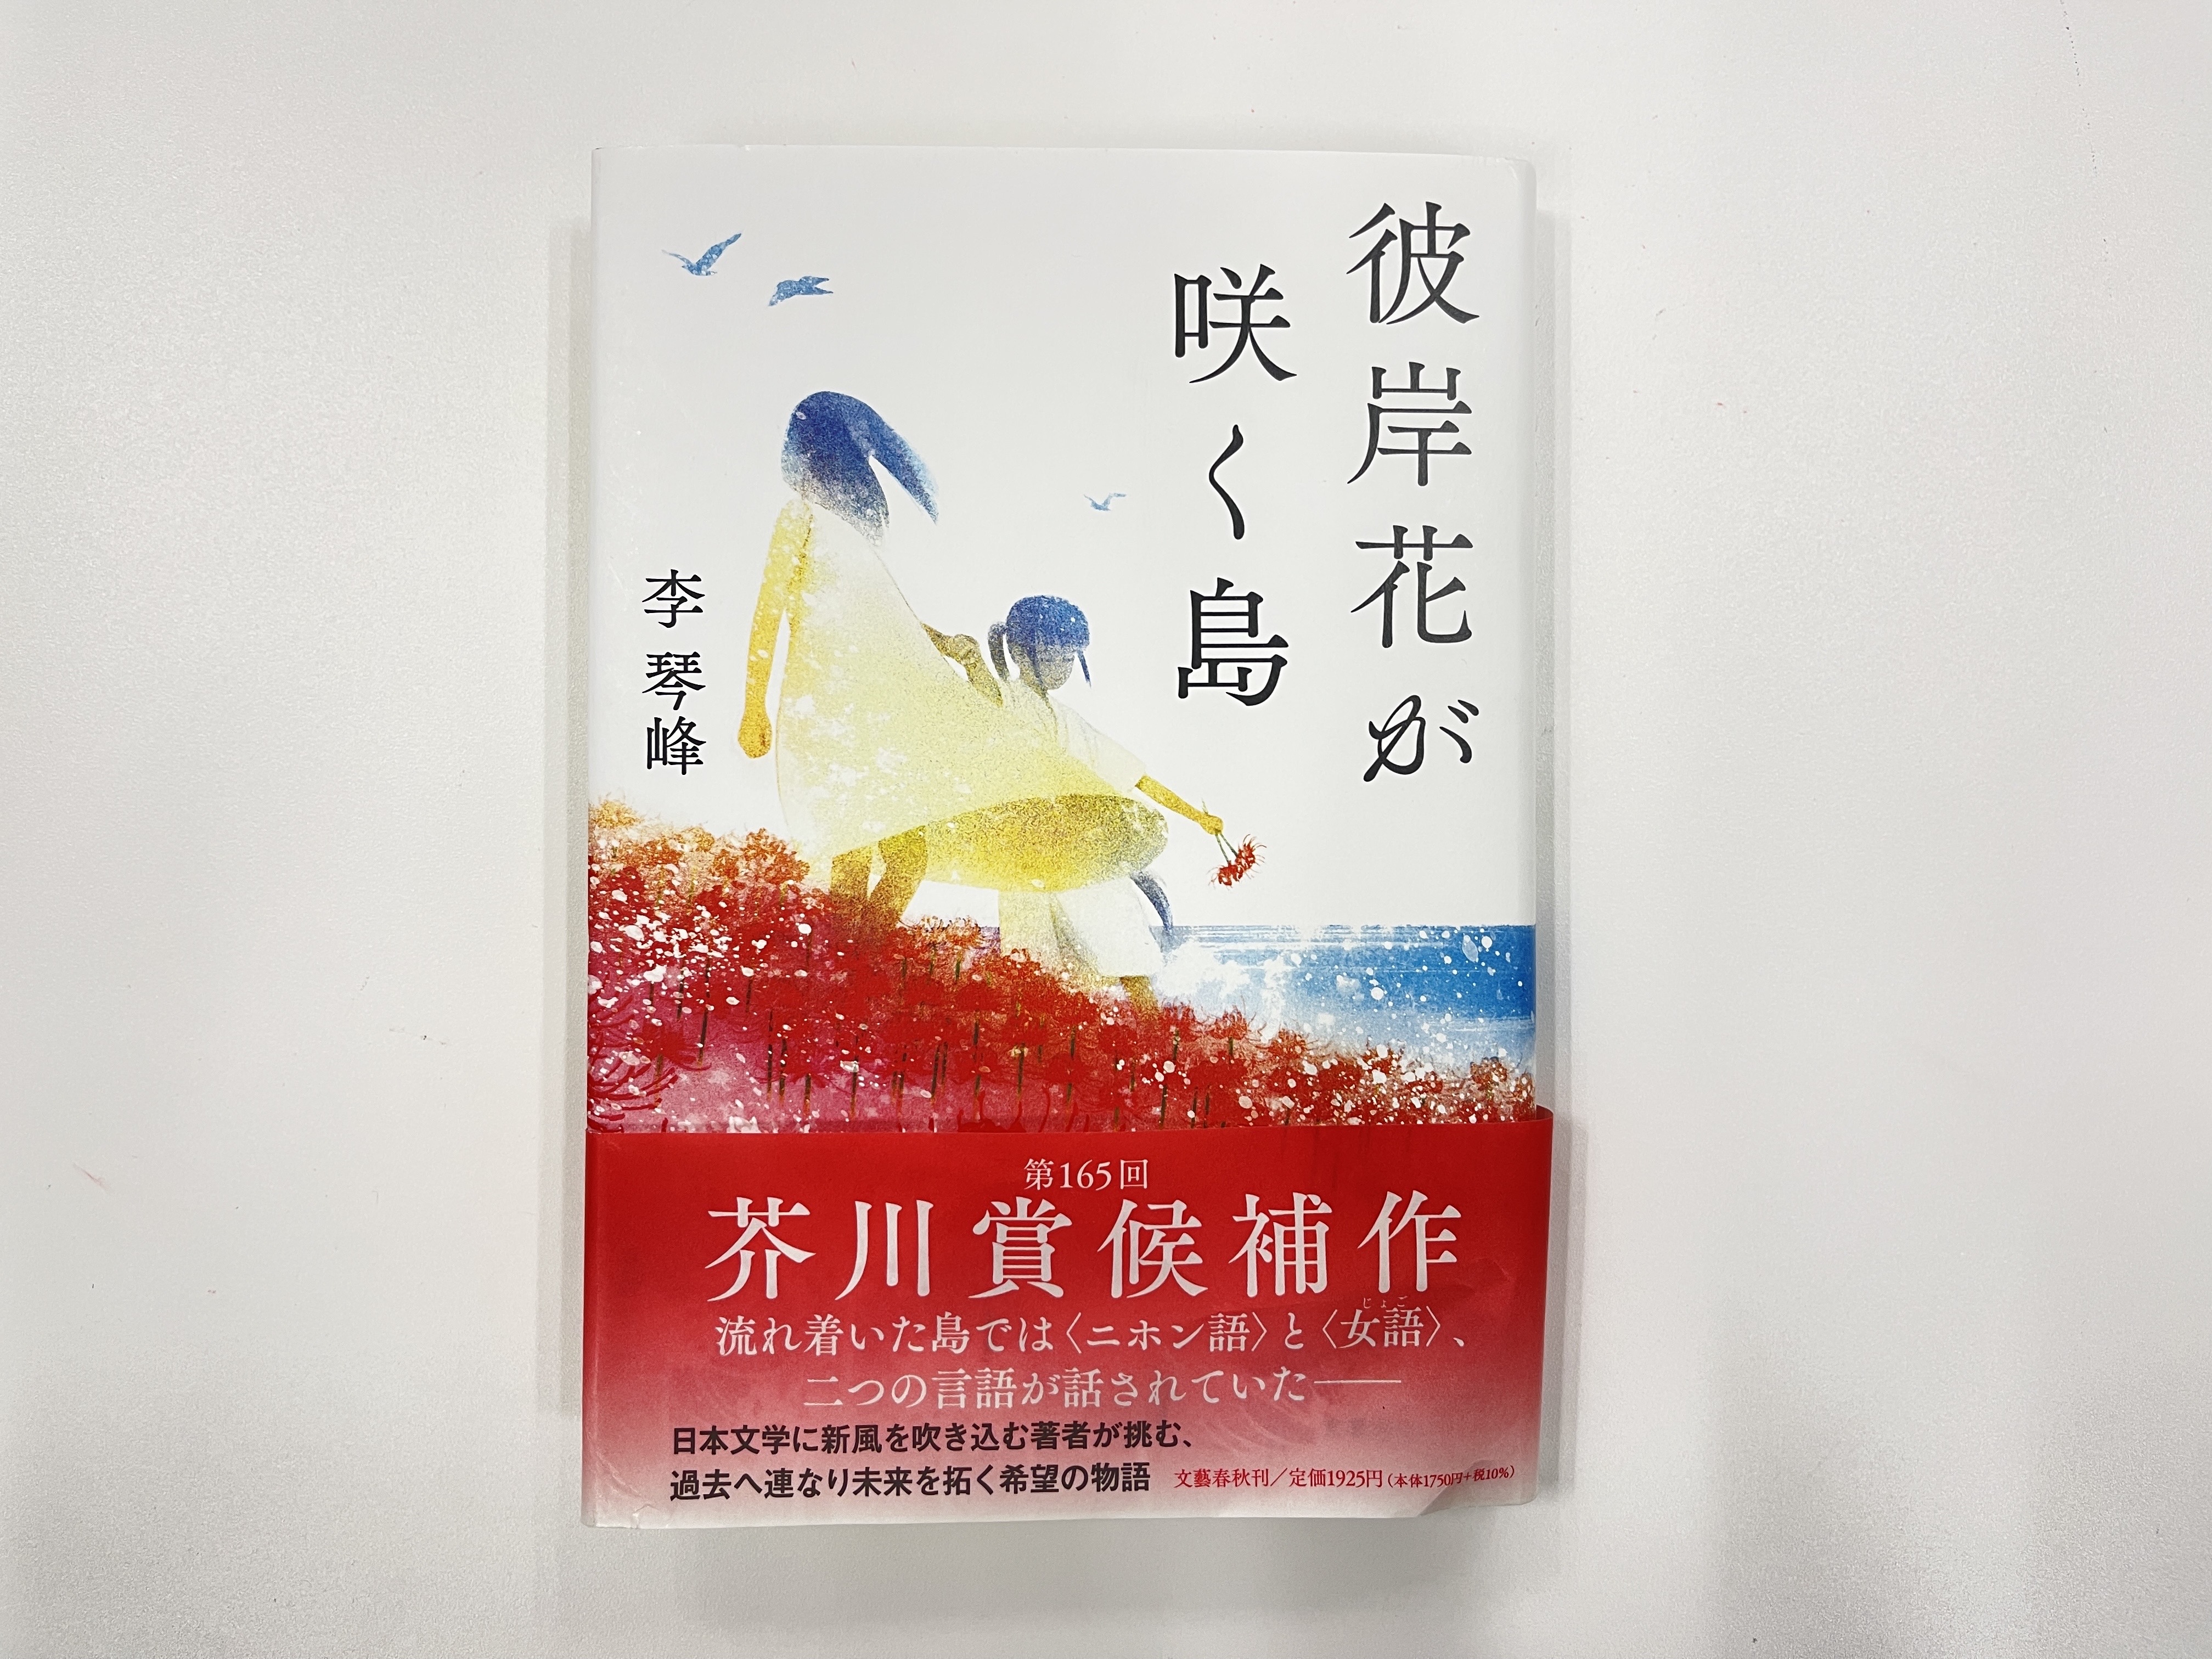 榮獲芥川獎之李琴峰作品「彼岸花盛開之島」於6月在日本出版後廣受好評.jpg